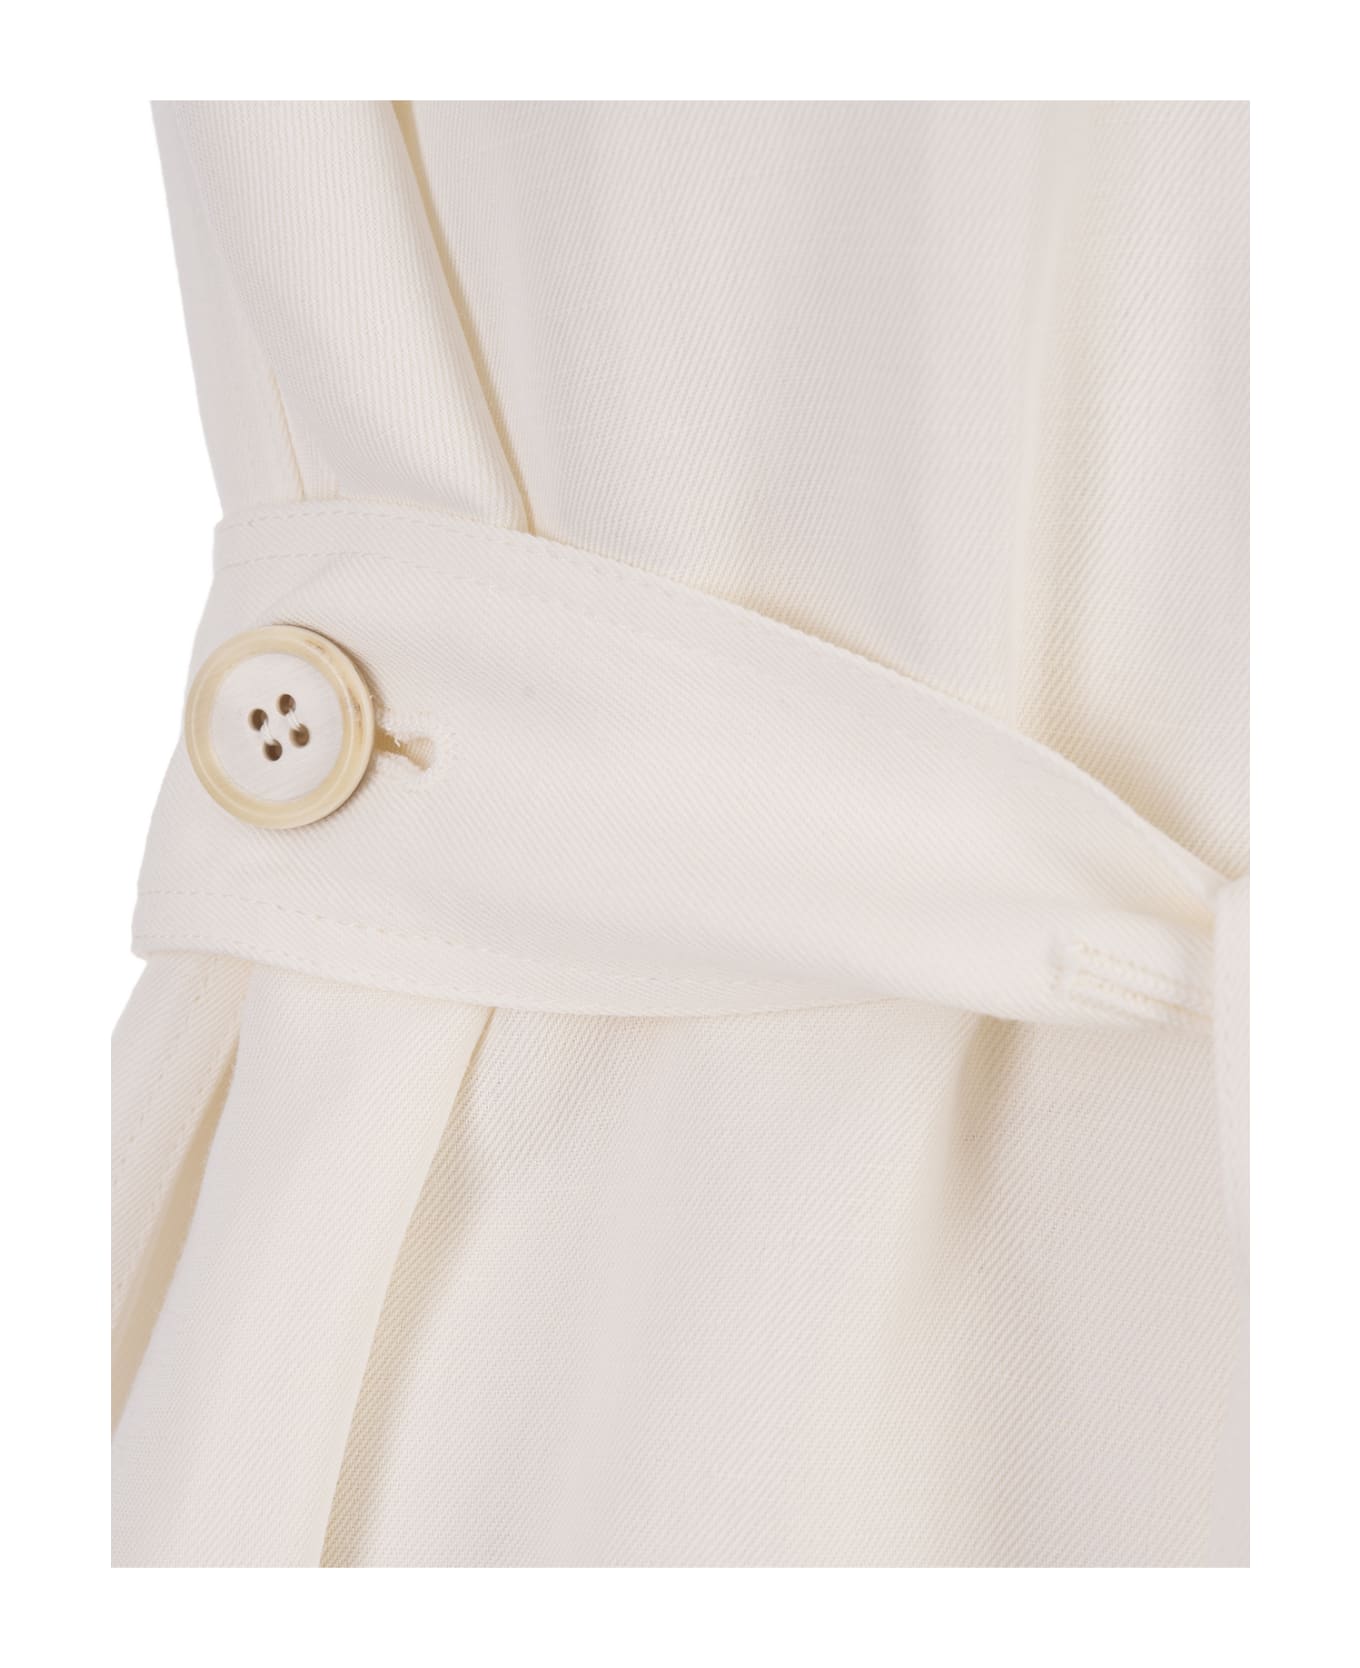 Fabiana Filippi White Viscose And Linen Dress - White